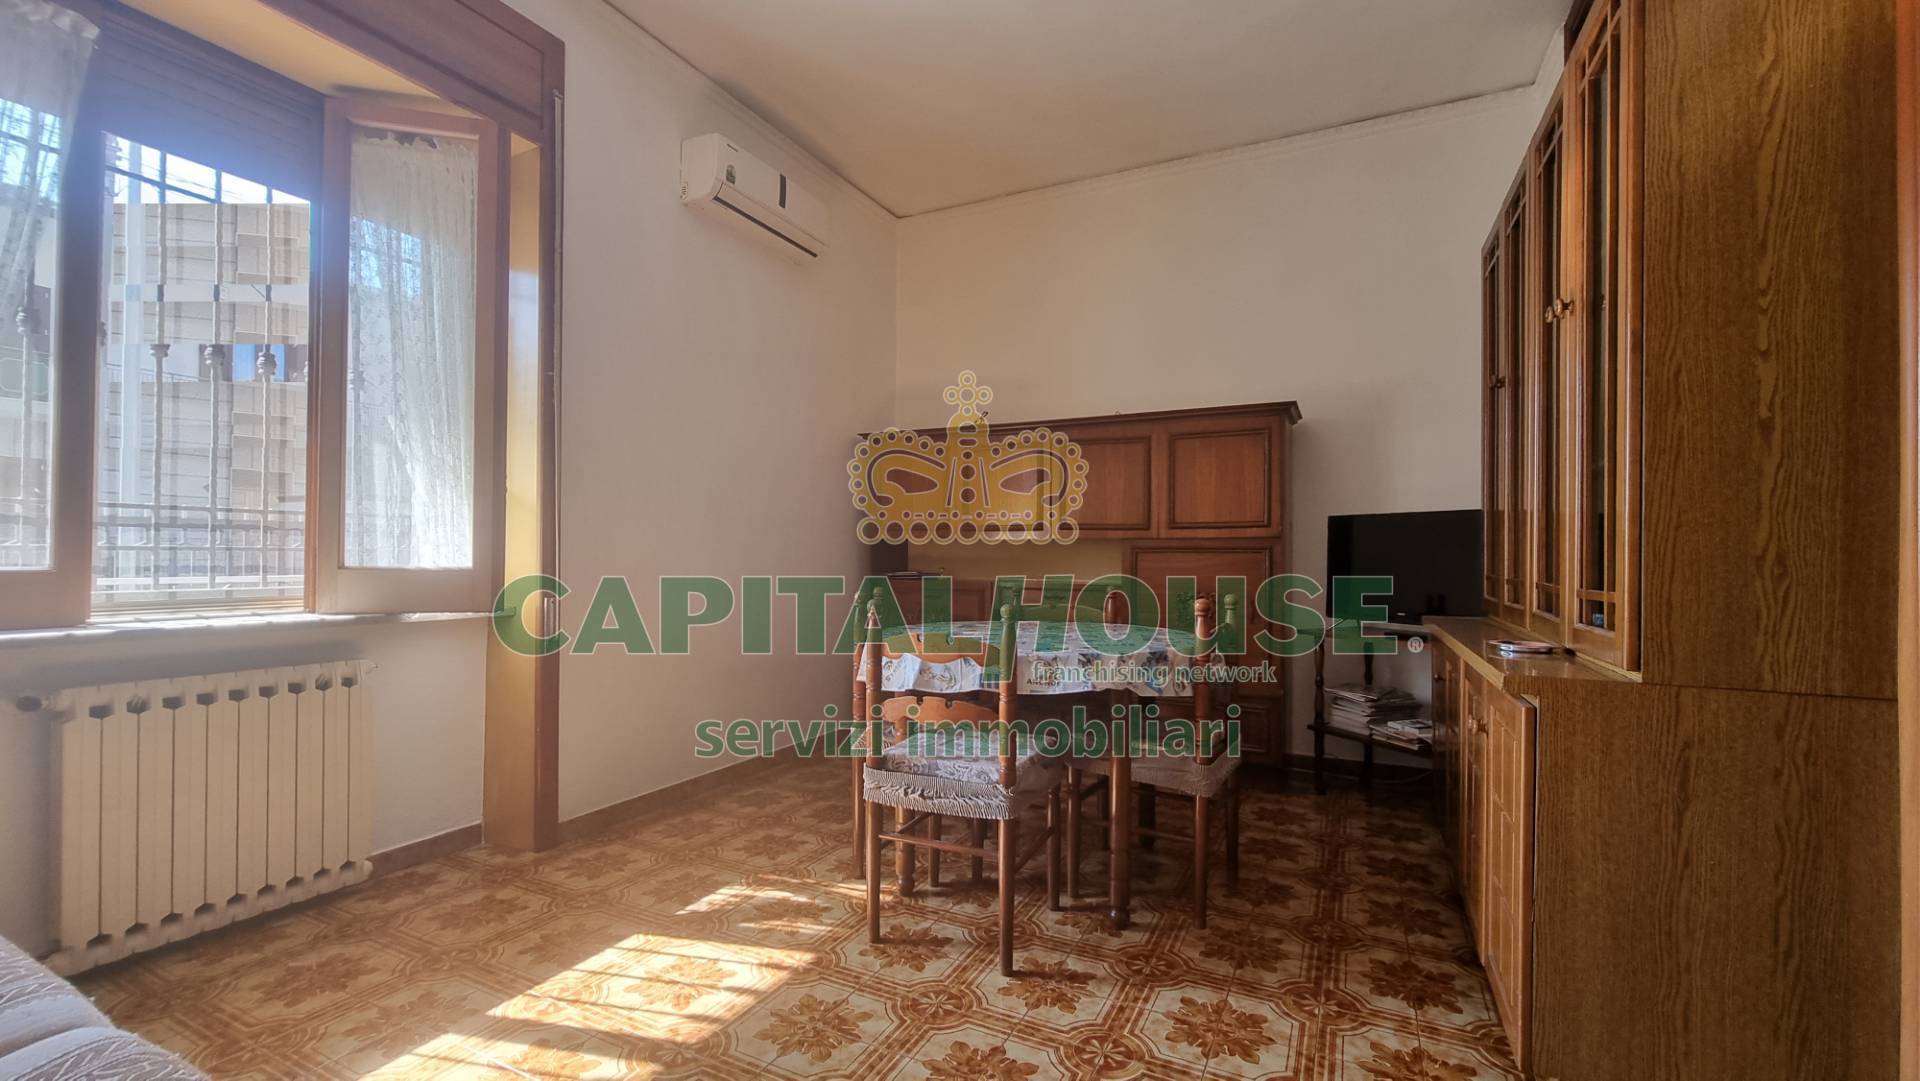 Appartamento in vendita a Macerata Campania, 3 locali, prezzo € 89.000 | PortaleAgenzieImmobiliari.it